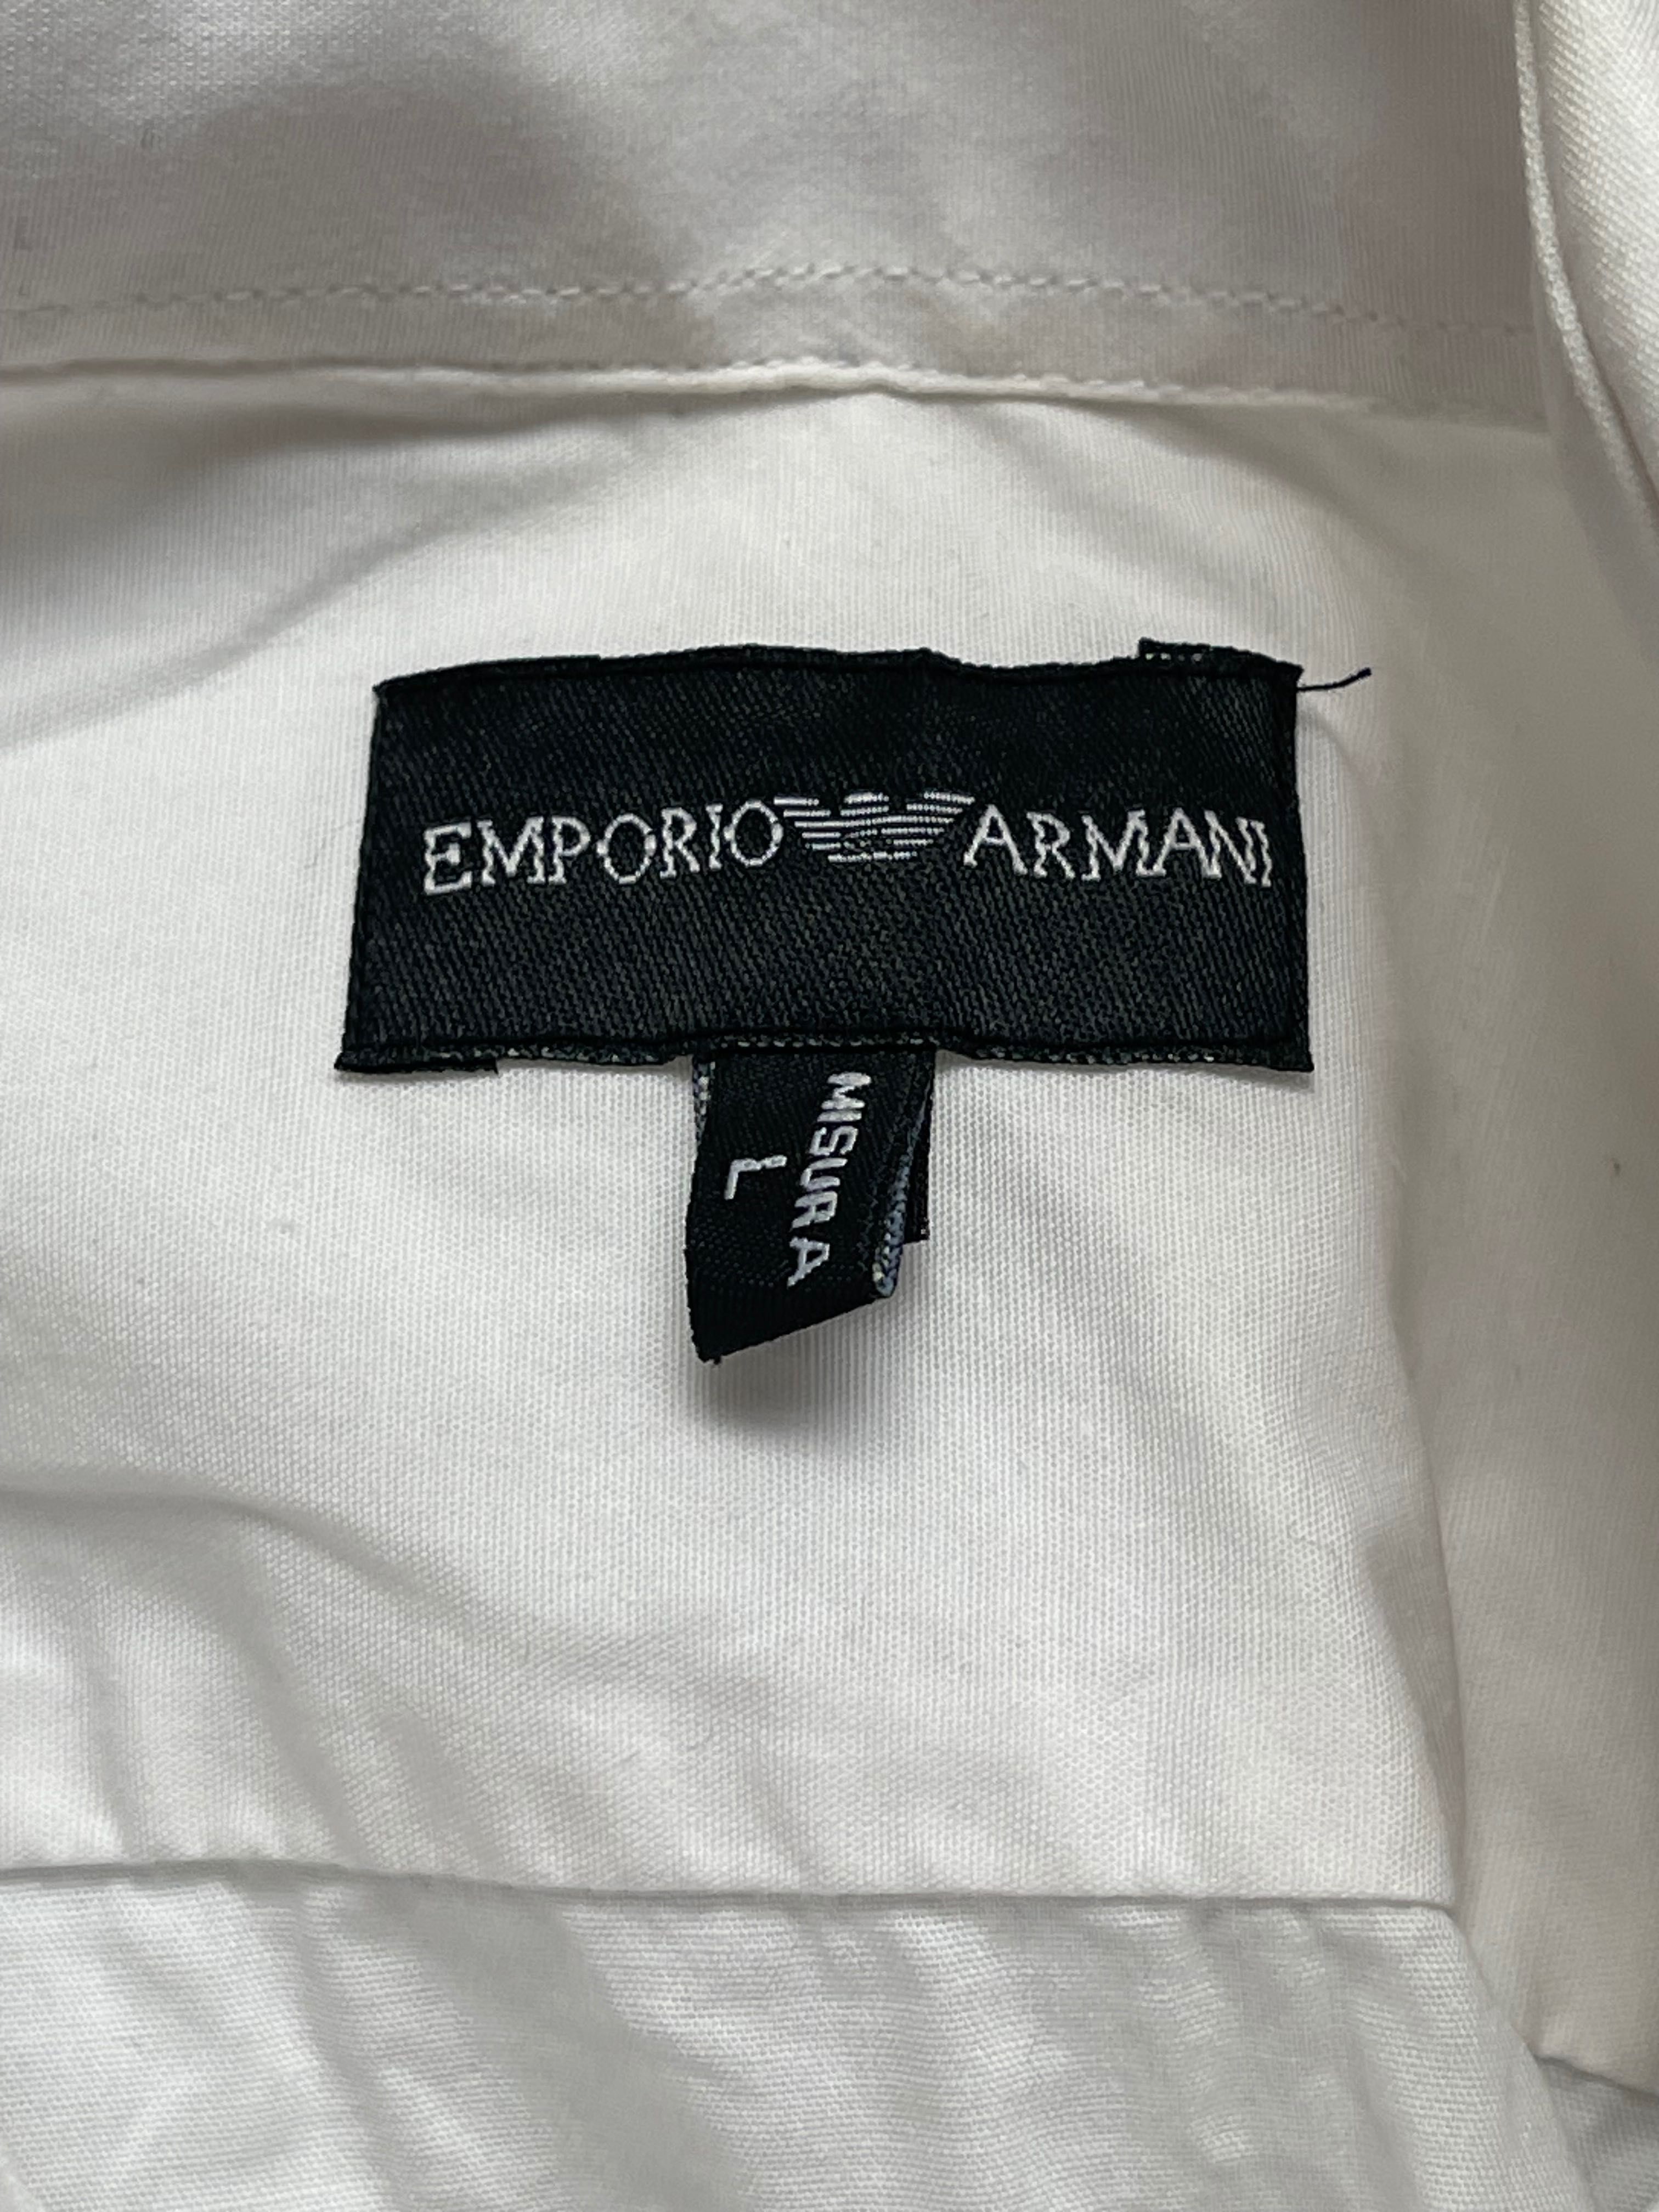 Biała koszula - Emporio Armani - L